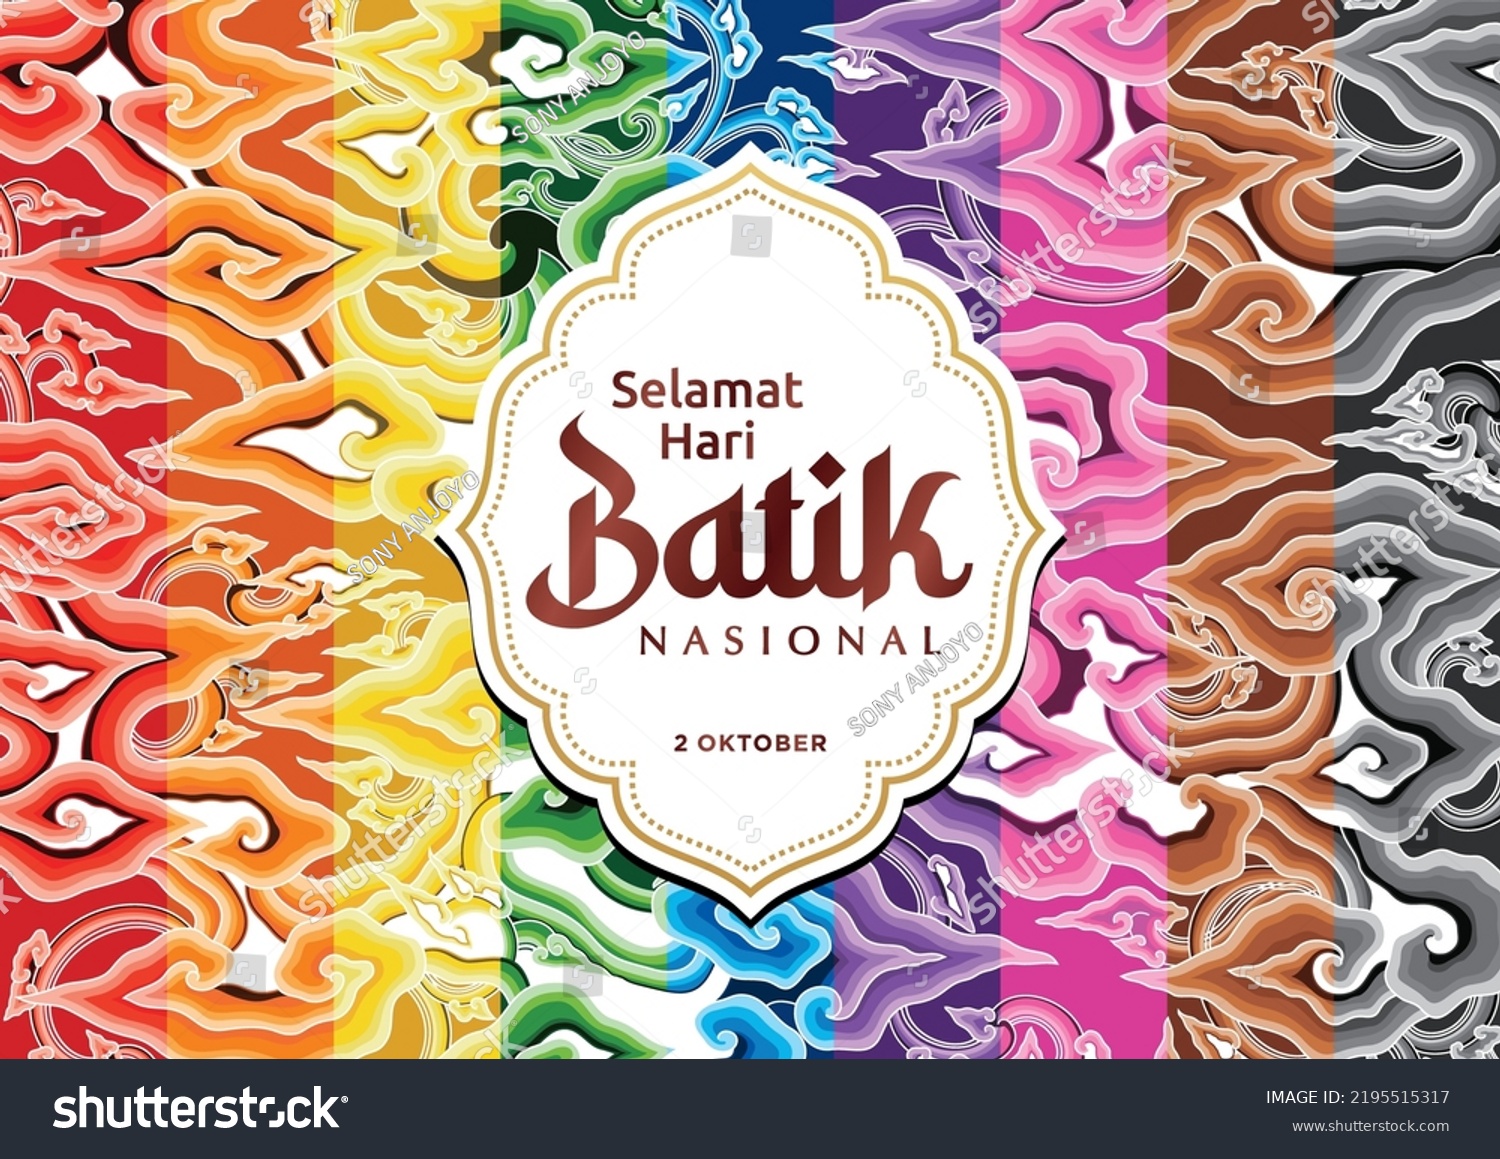 SVG of happy national batik day, october 2
 svg